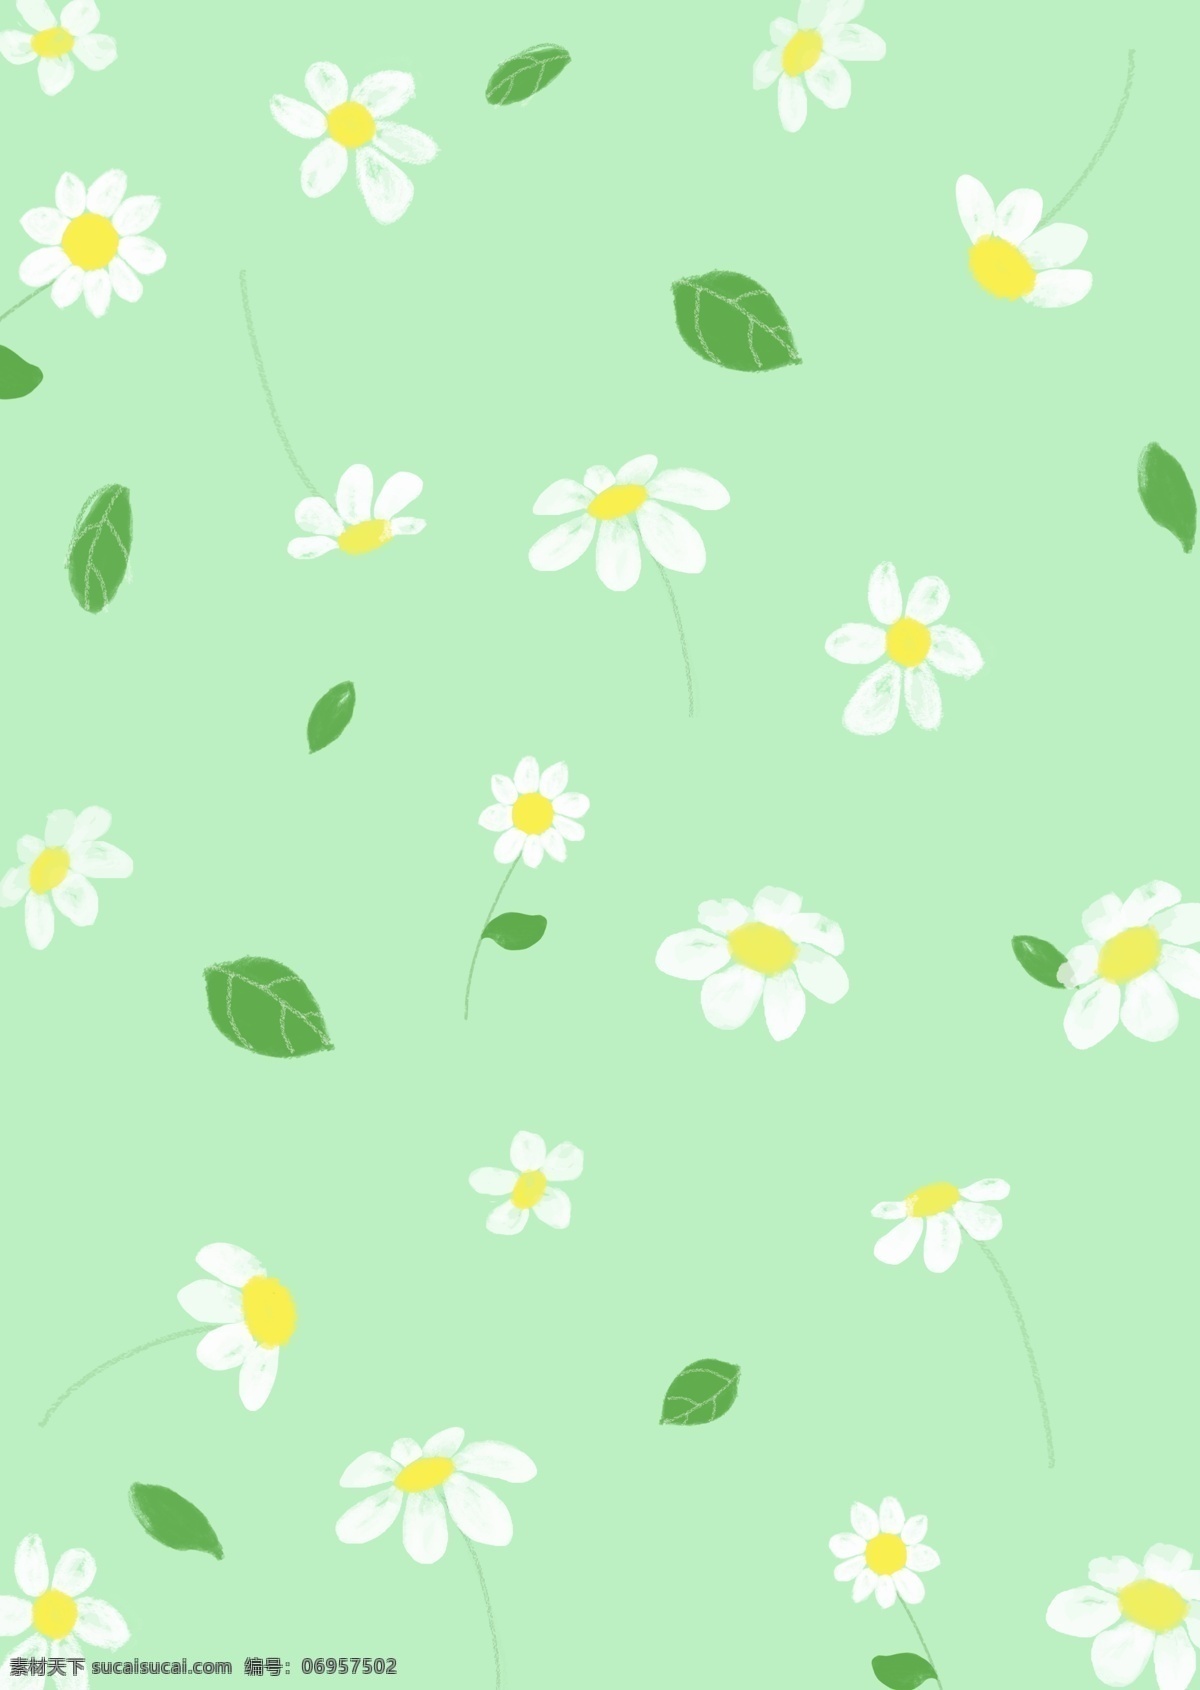 手绘雏菊插画 手绘 雏菊 插画 壁纸 绿色 花卉